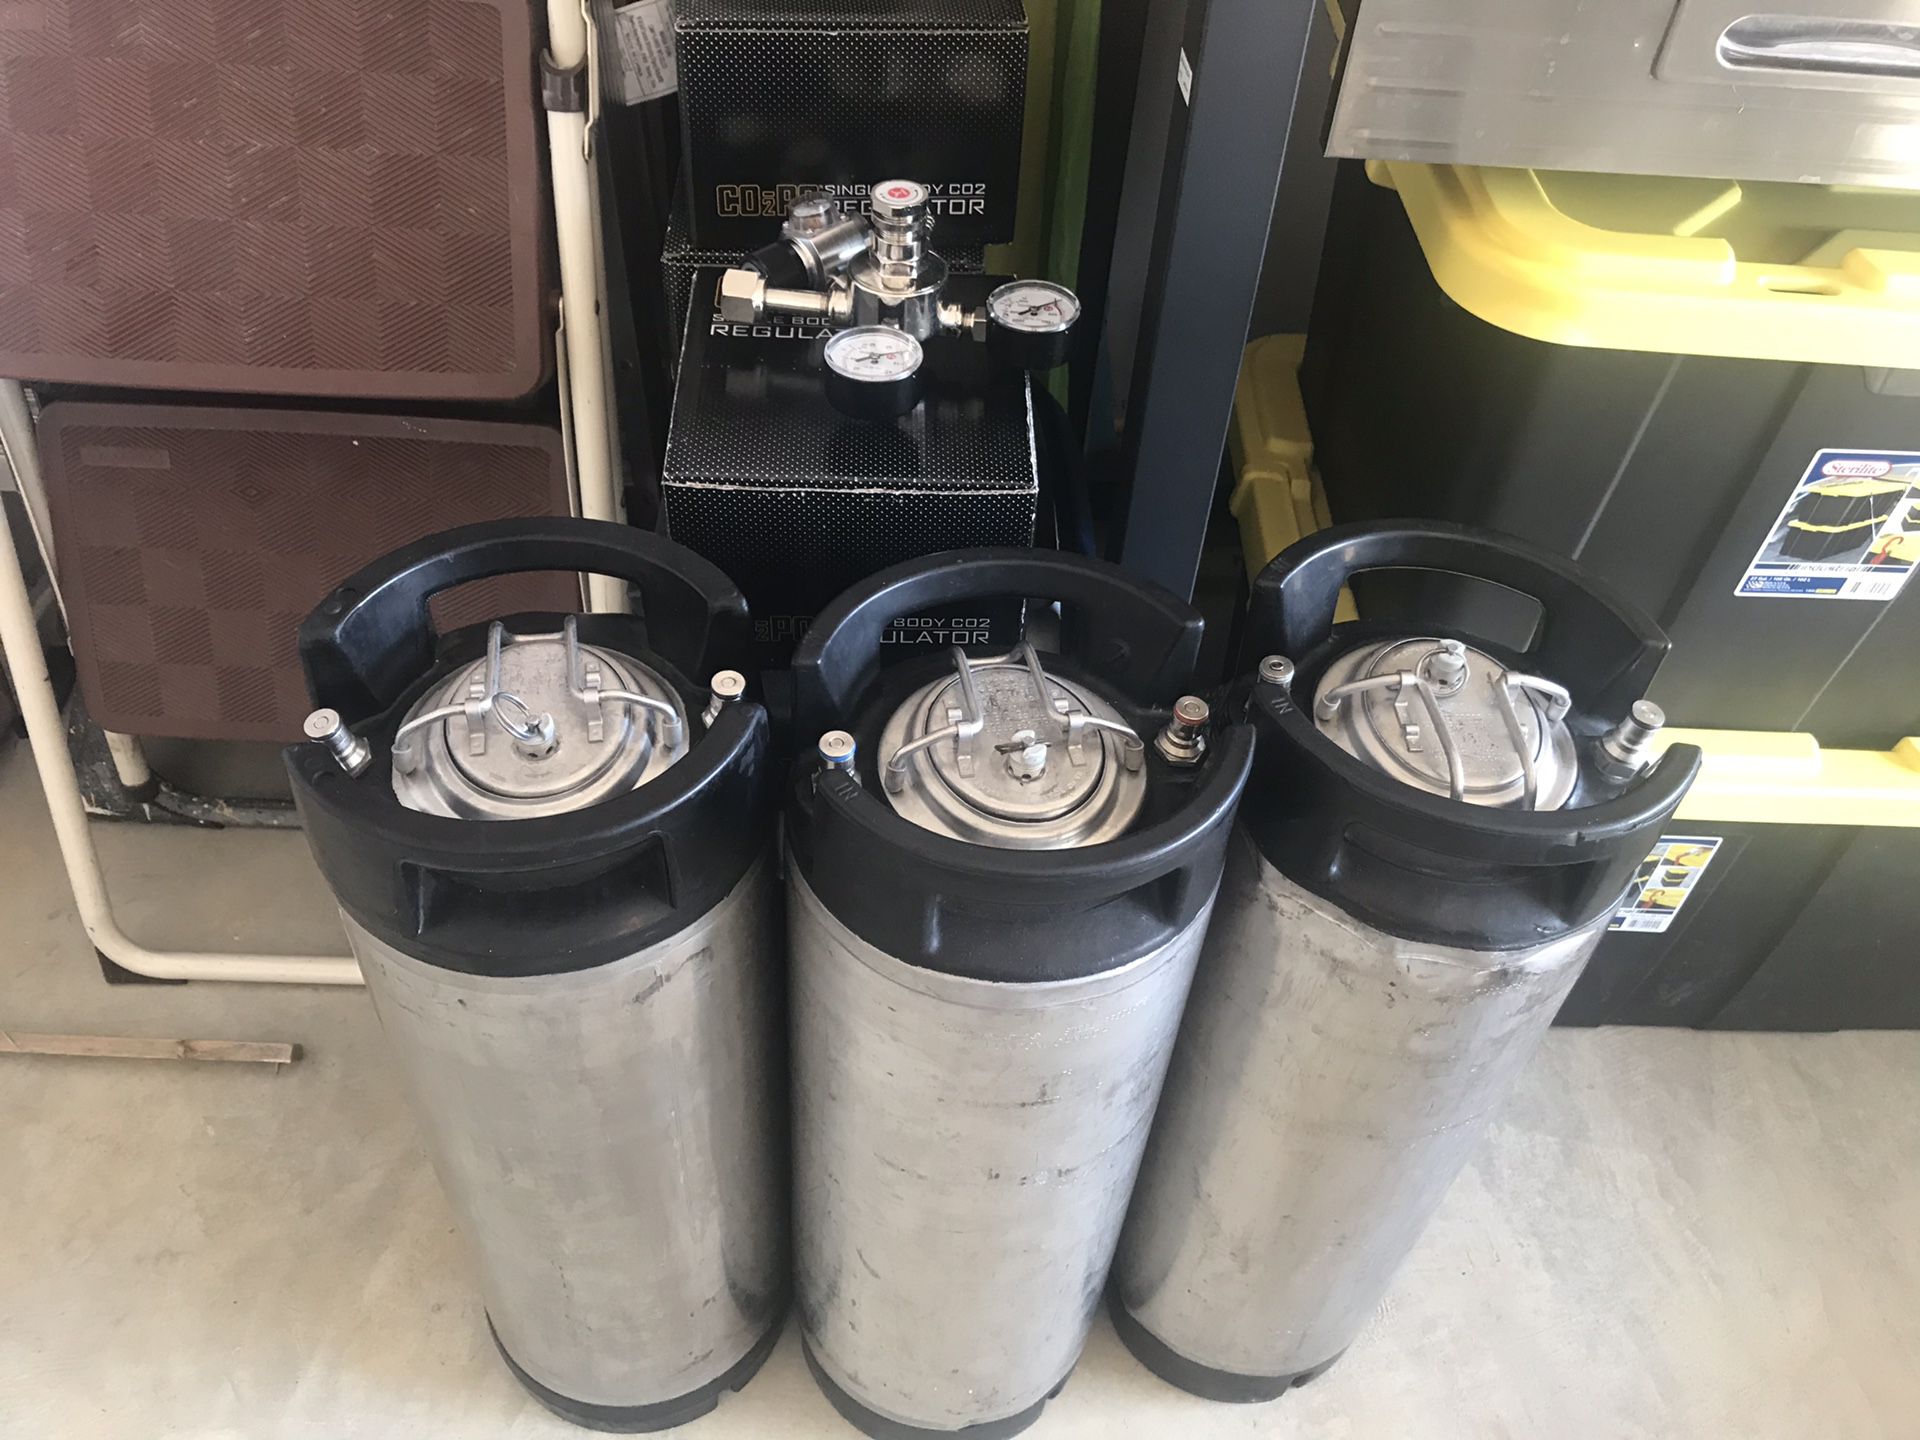 Beermaking equipment